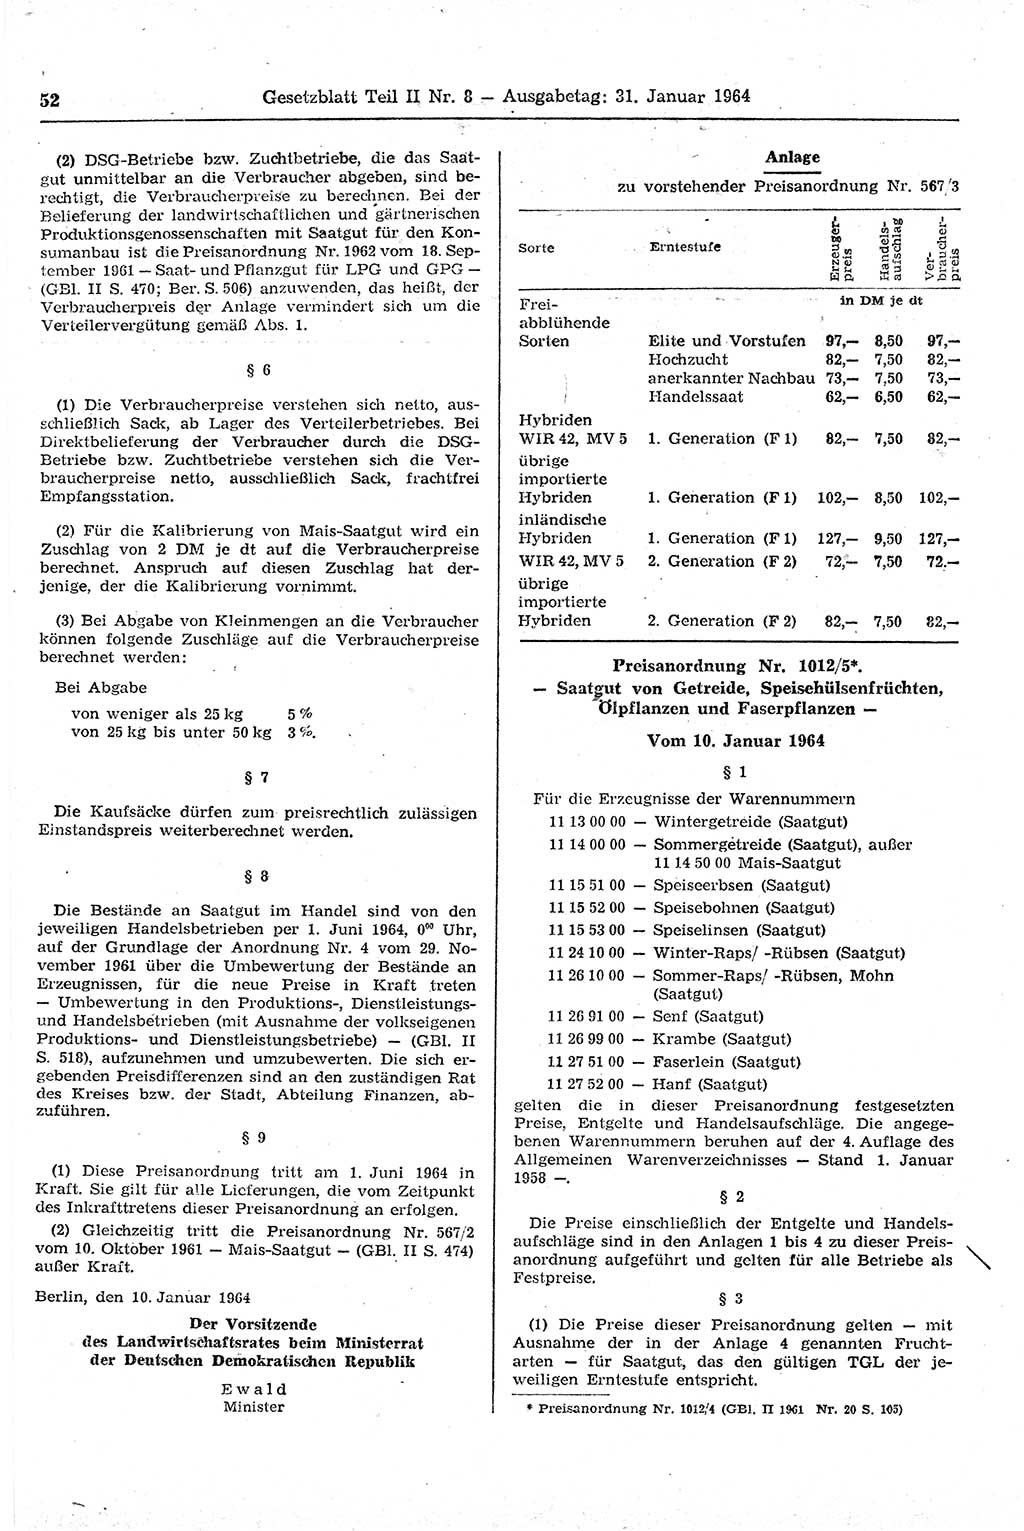 Gesetzblatt (GBl.) der Deutschen Demokratischen Republik (DDR) Teil ⅠⅠ 1964, Seite 52 (GBl. DDR ⅠⅠ 1964, S. 52)